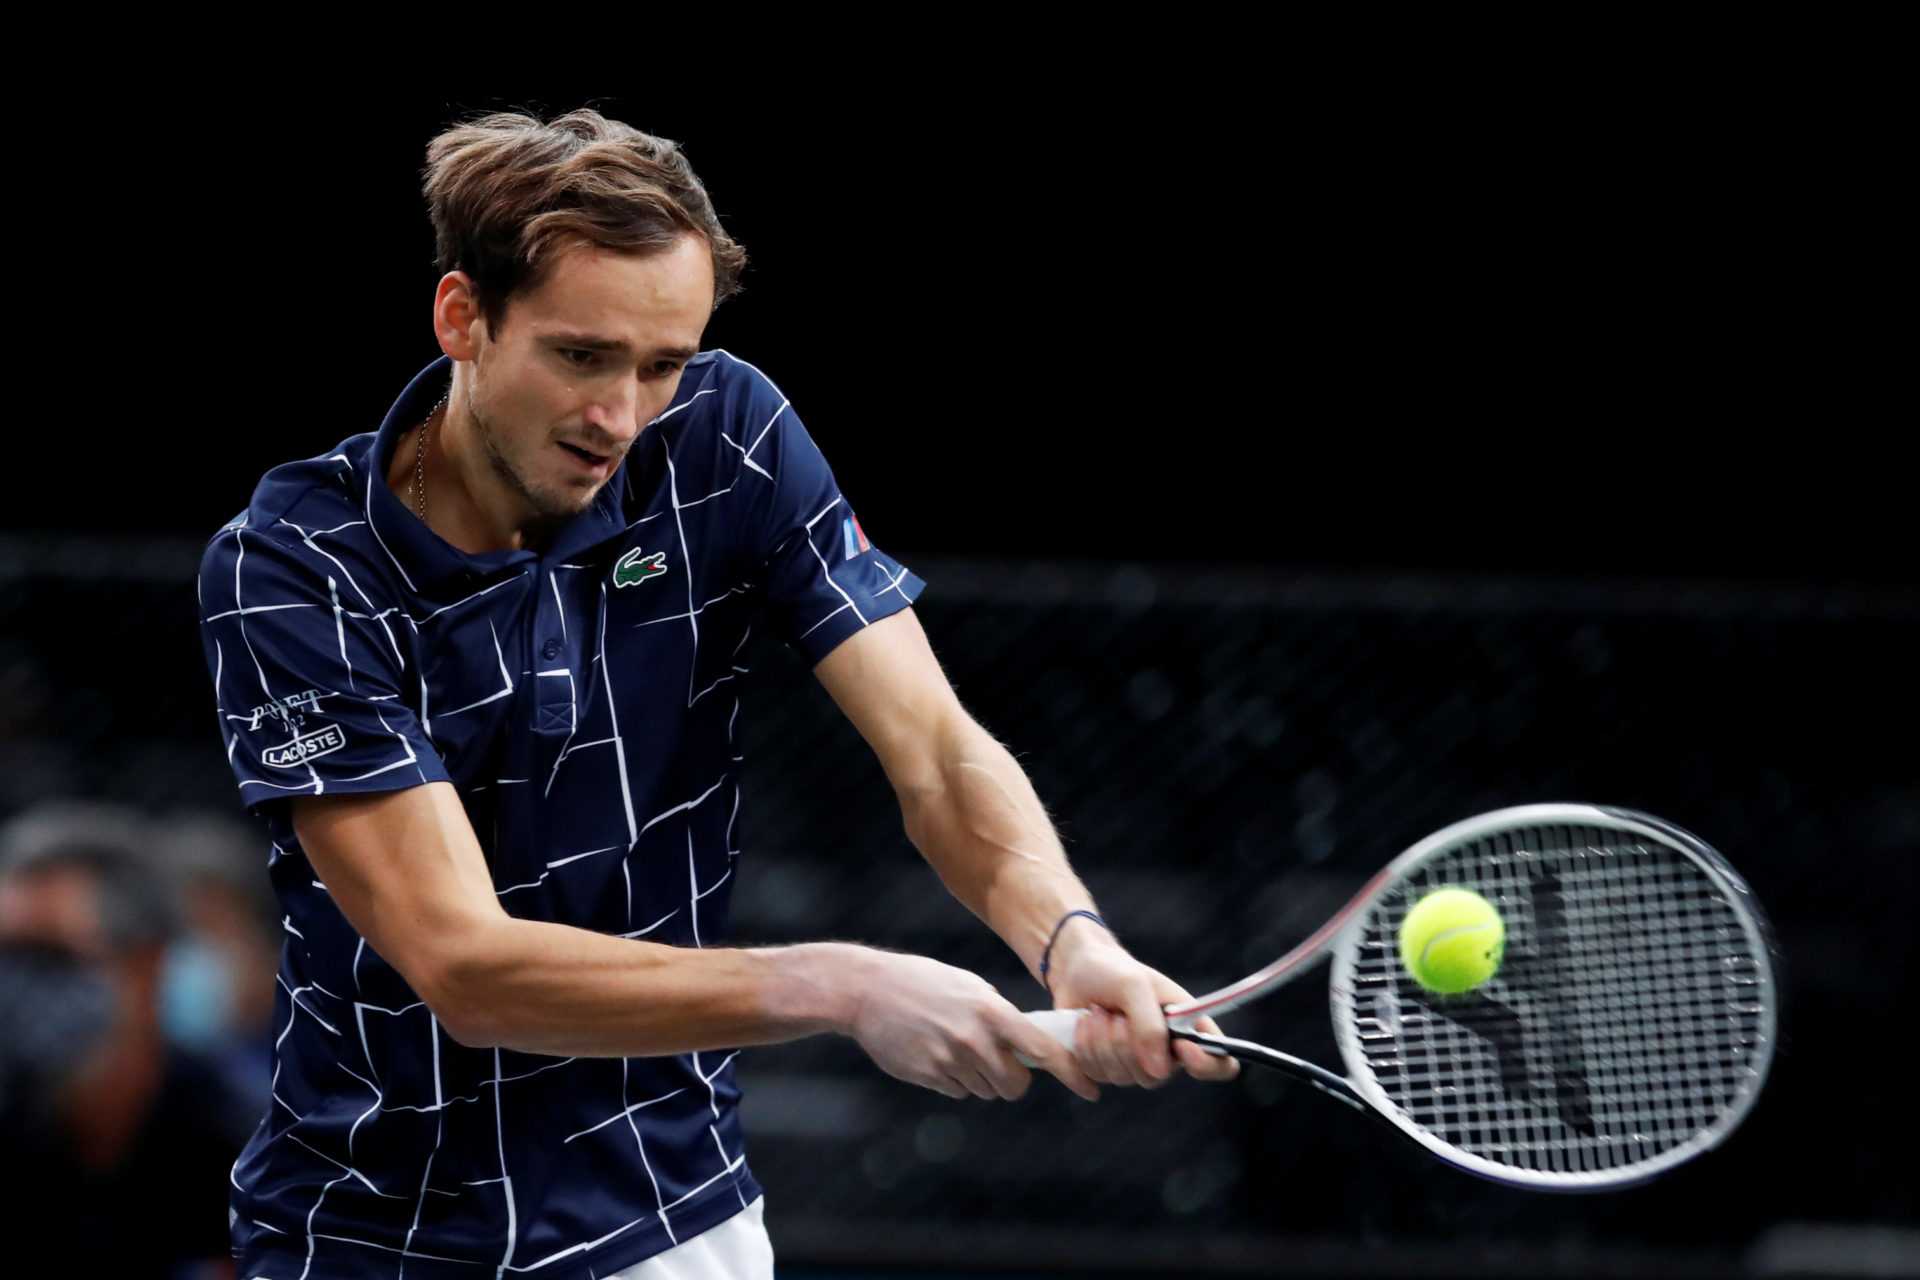 Daniil Medvedev remplace Roger Federer au n ° 4 mondial avec une superbe victoire contre Diego Schwartzman